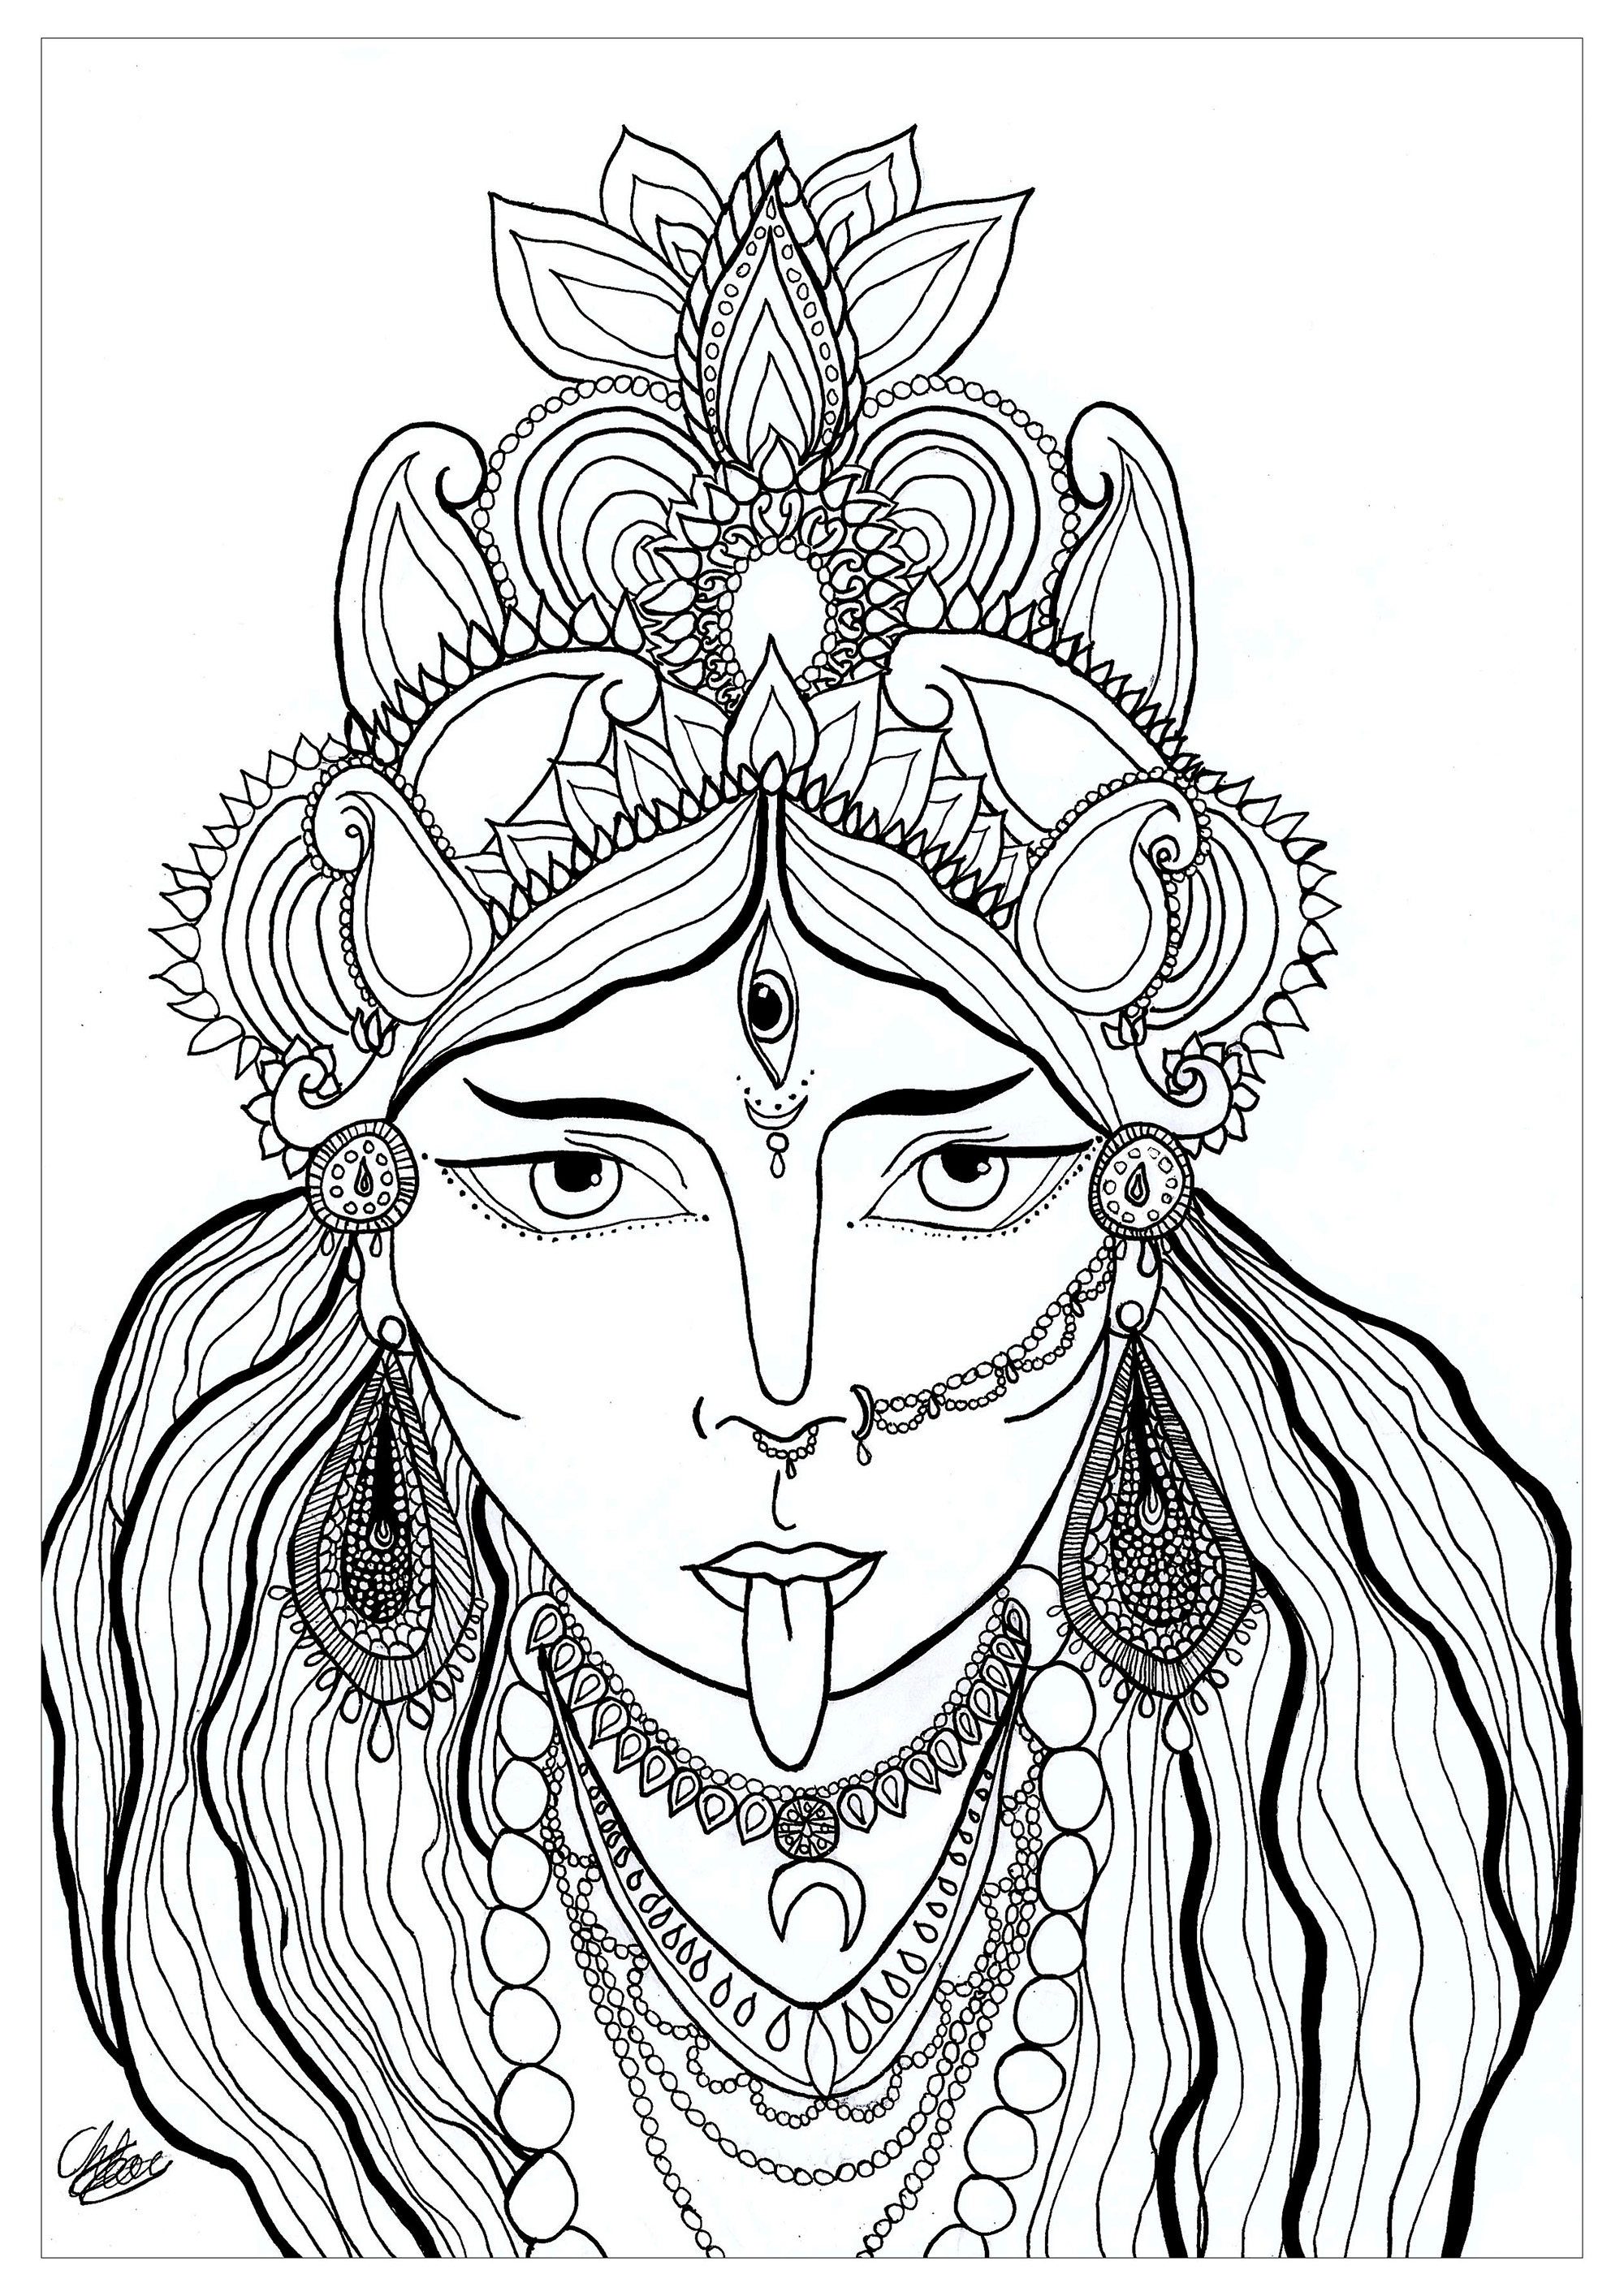 Página para colorir da deusa Kali. Kali é uma deusa hindu adorada como uma manifestação de Shakti, o poder feminino criativo. Representada com um aspeto aterrador, simboliza o tempo, a destruição do mal e a transformação, desempenhando um papel importante na tradição hindu.